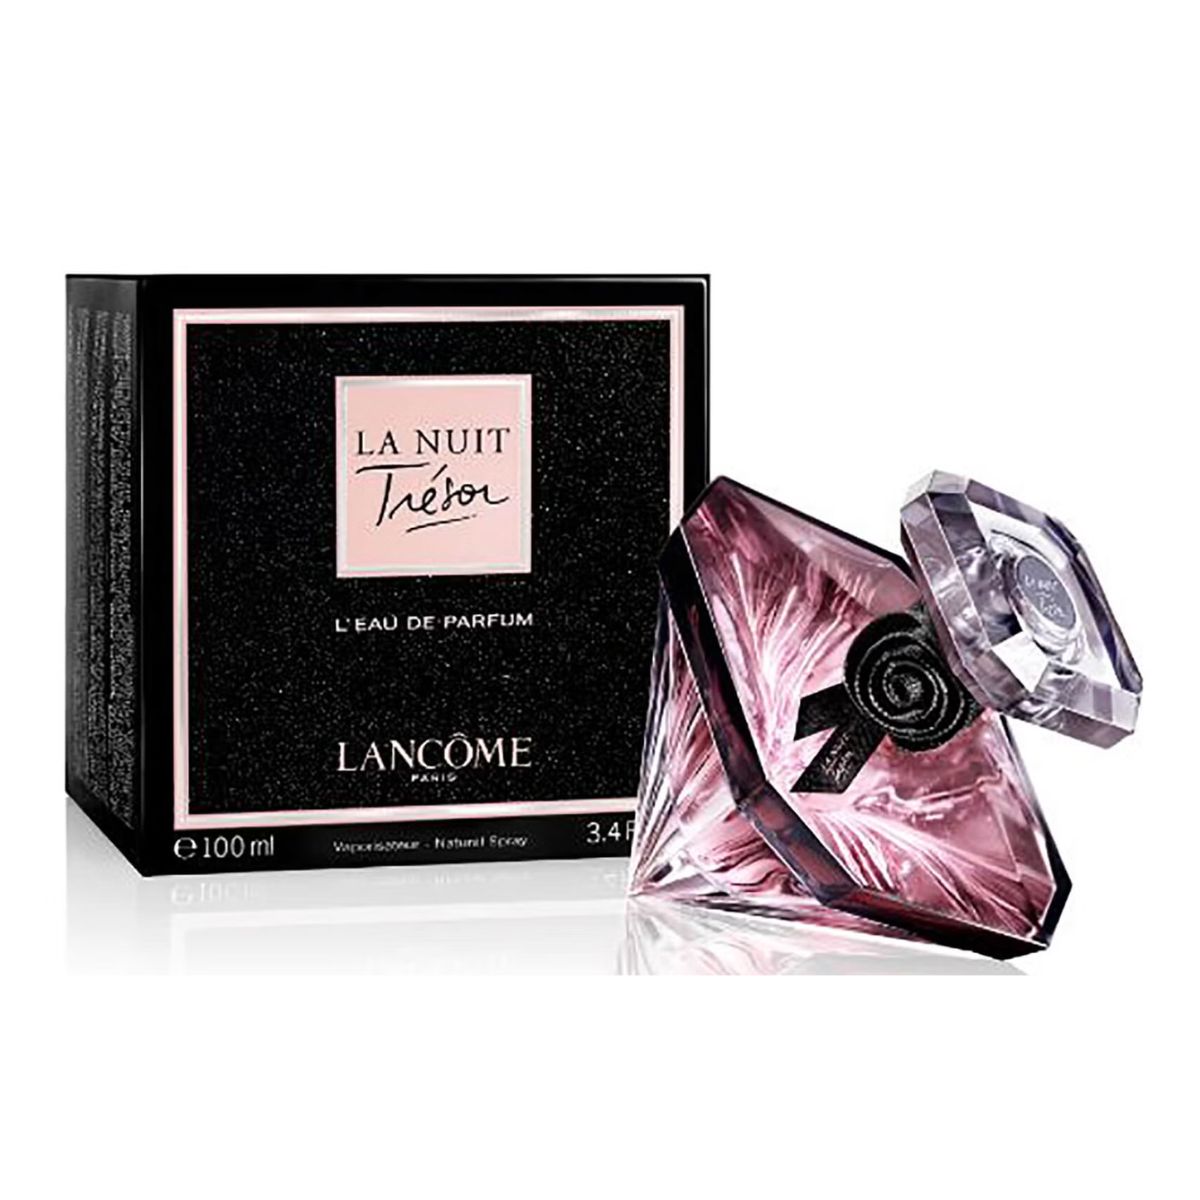 Lancôme Tresor La Nuit Eau de Parfum